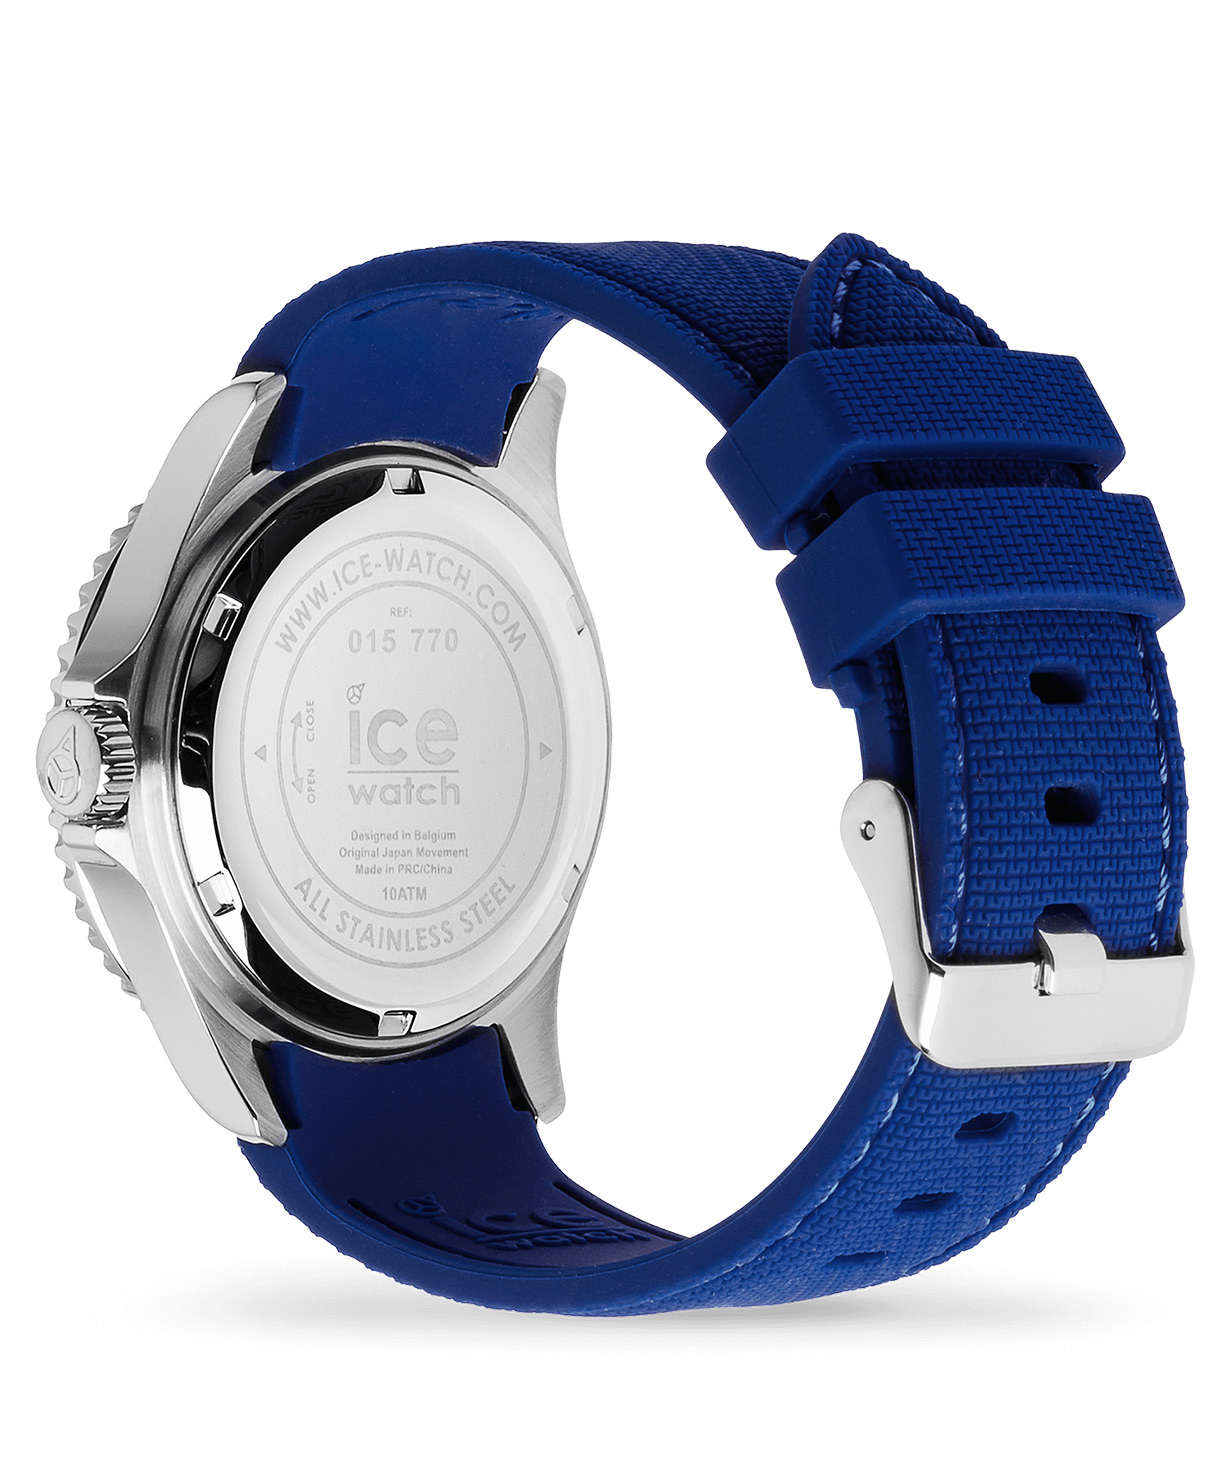 Ժամացույց «Ice-Watch» ICE steel - Blue